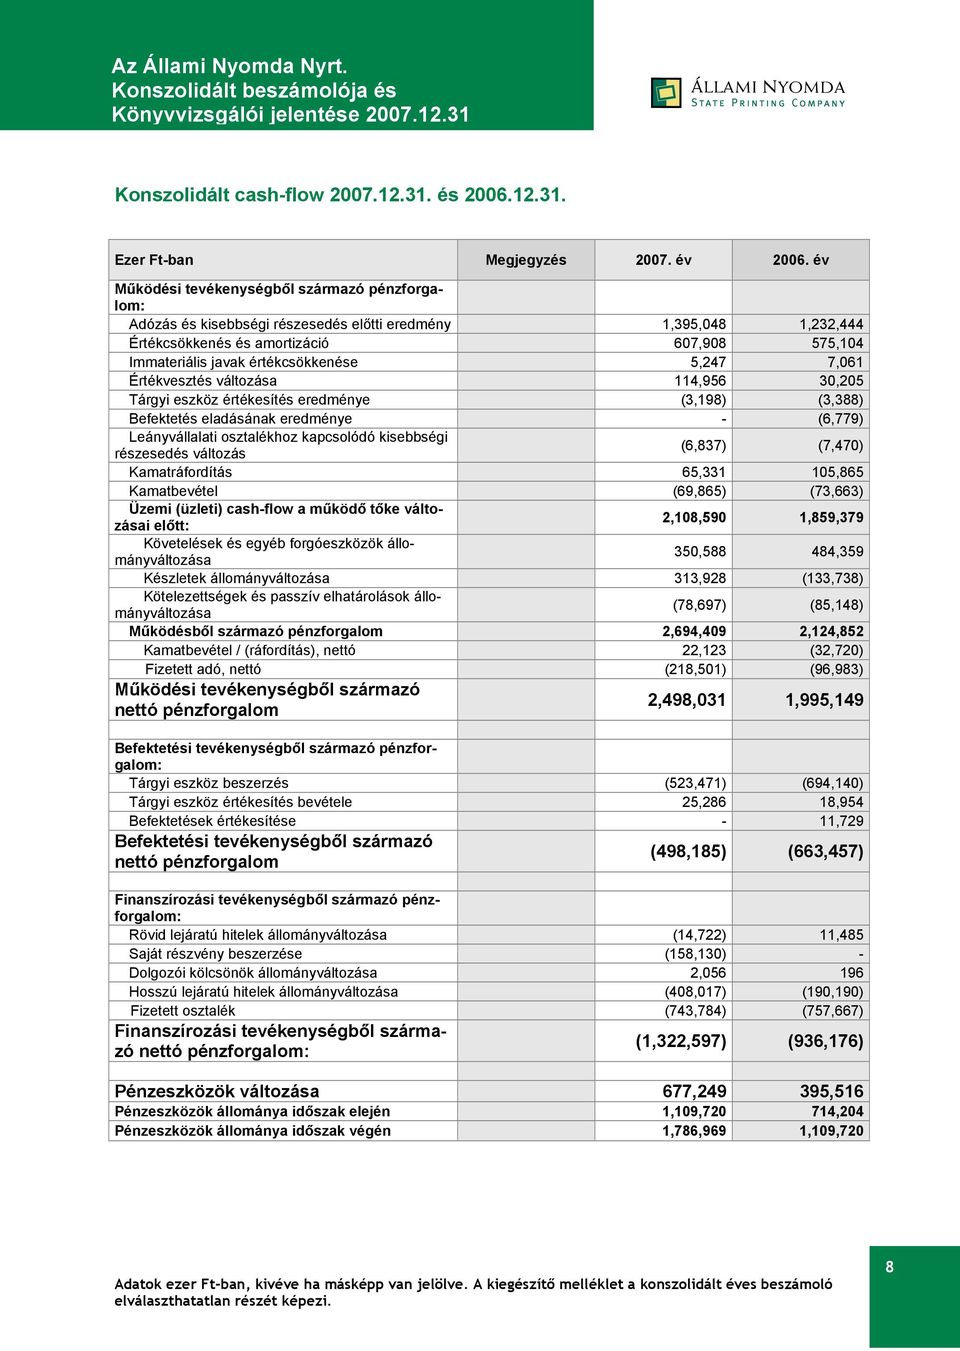 5,247 7,061 Értékvesztés változása 114,956 30,205 Tárgyi eszköz értékesítés eredménye (3,198) (3,388) Befektetés eladásának eredménye - (6,779) Leányvállalati osztalékhoz kapcsolódó kisebbségi